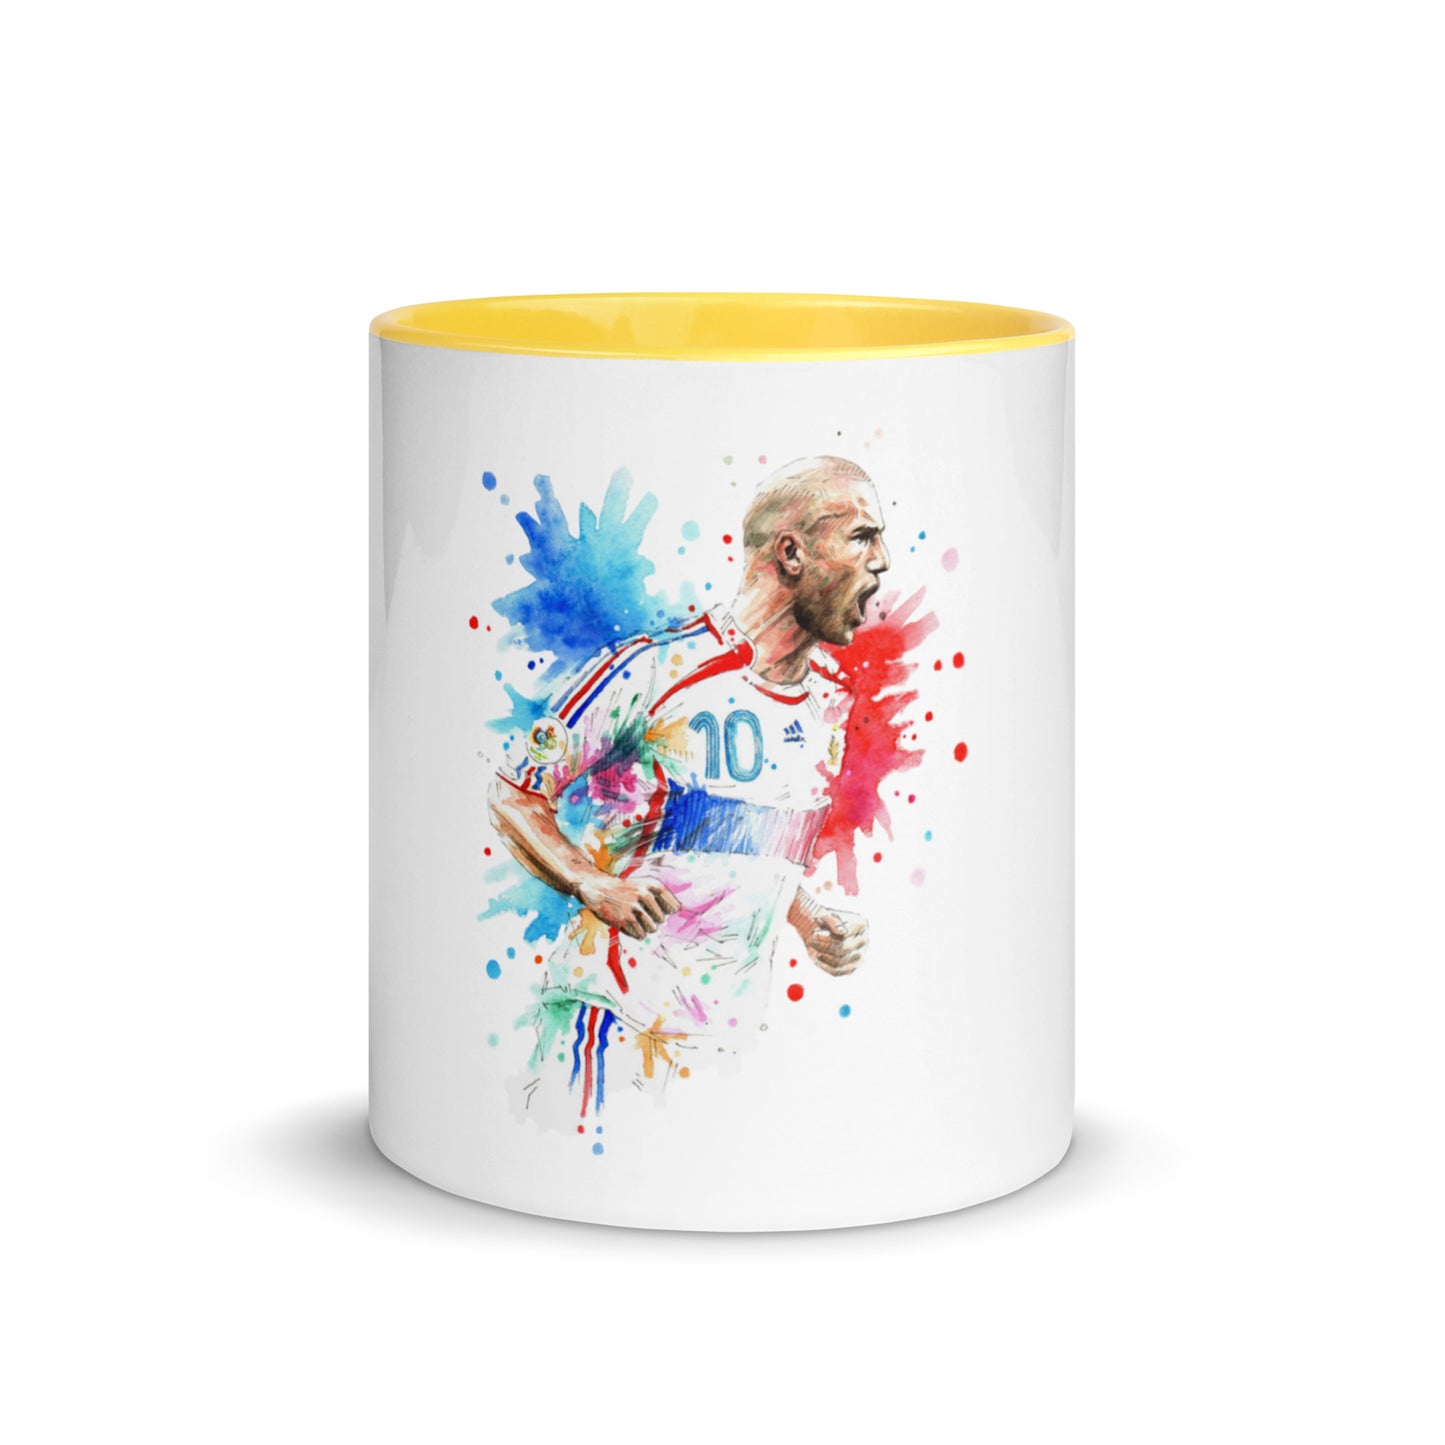 France Zinadine Zidane "Zizou" Vintage Coffee Mug with Color Inside - The 90+ Minute